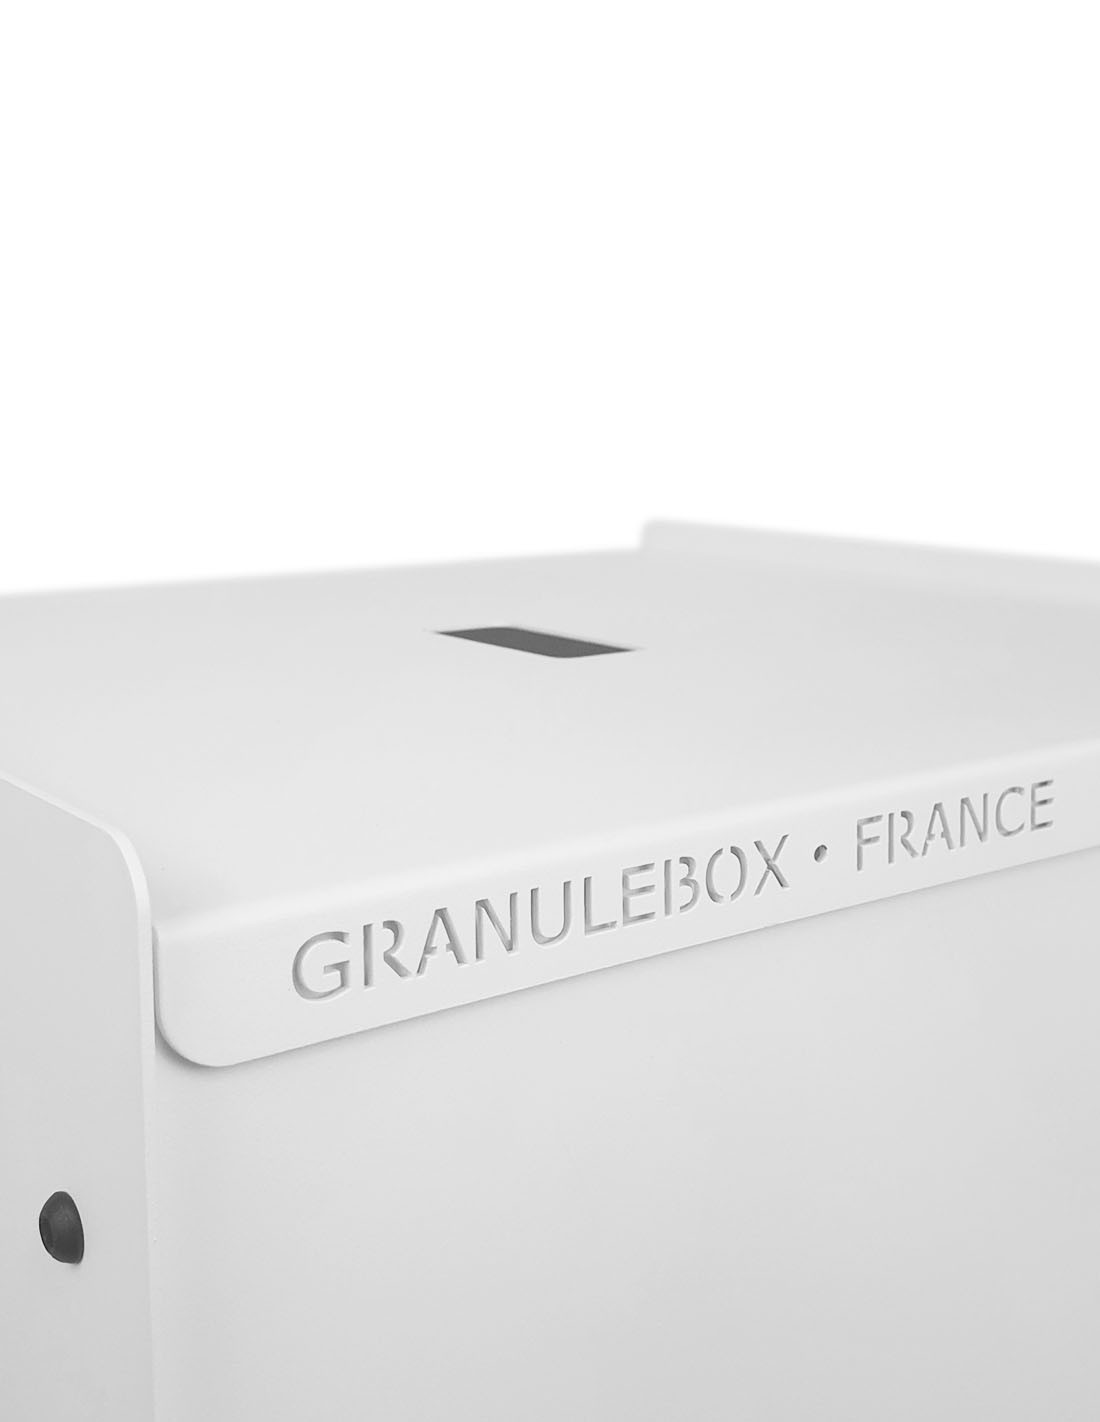 Granulebox 55kg noir CERF